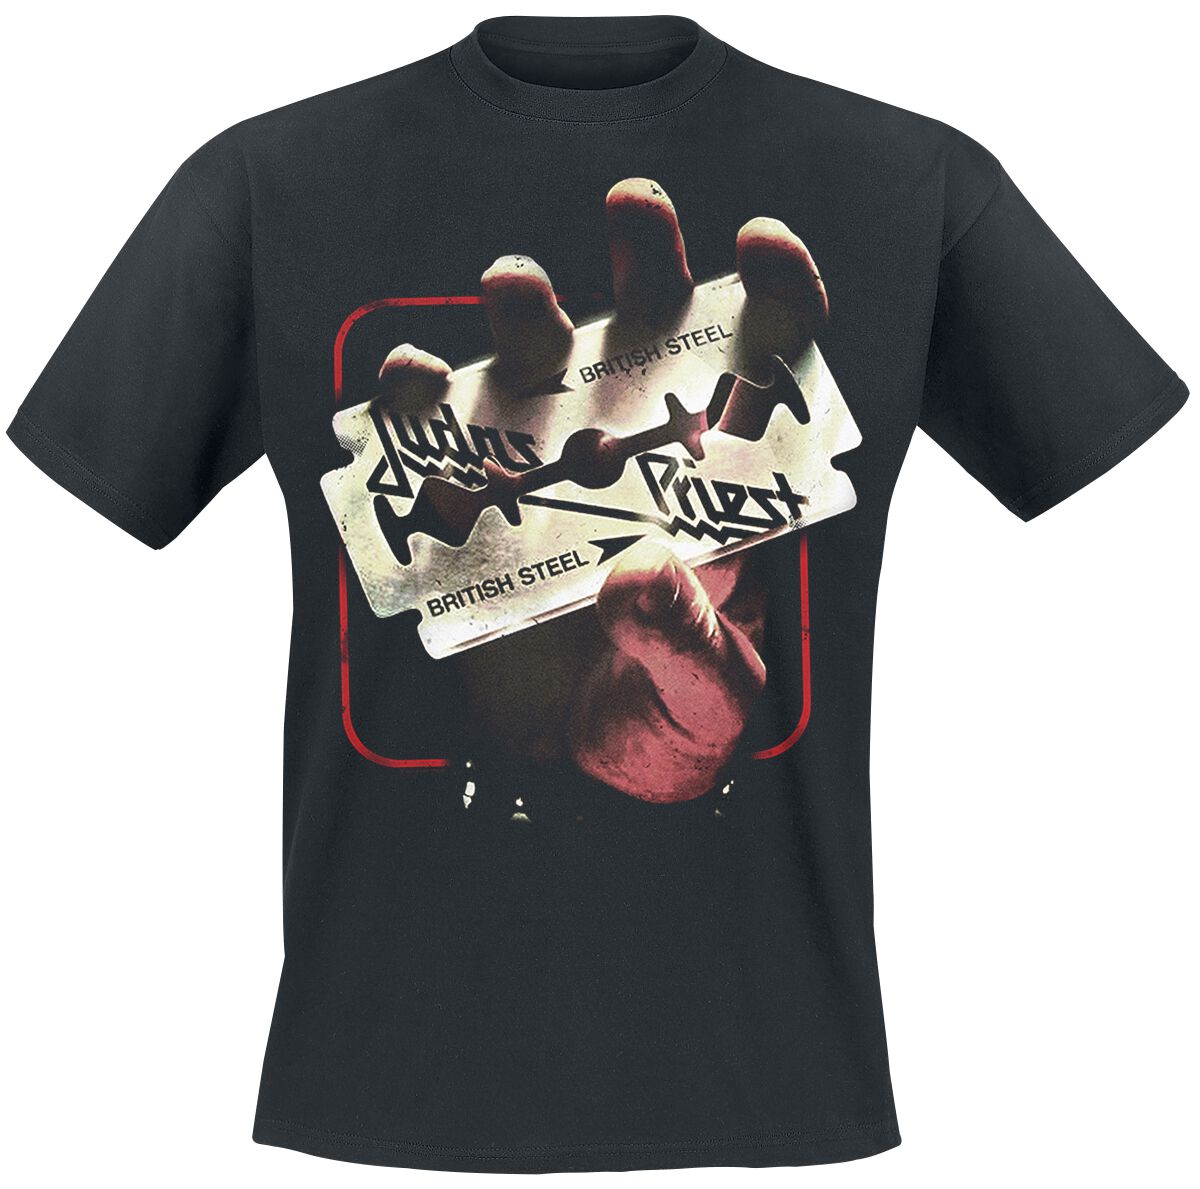 Judas Priest T-Shirt - British Steel 50HMY Tour - M bis XXL - für Männer - Größe XXL - schwarz  - EMP exklusives Merchandise!